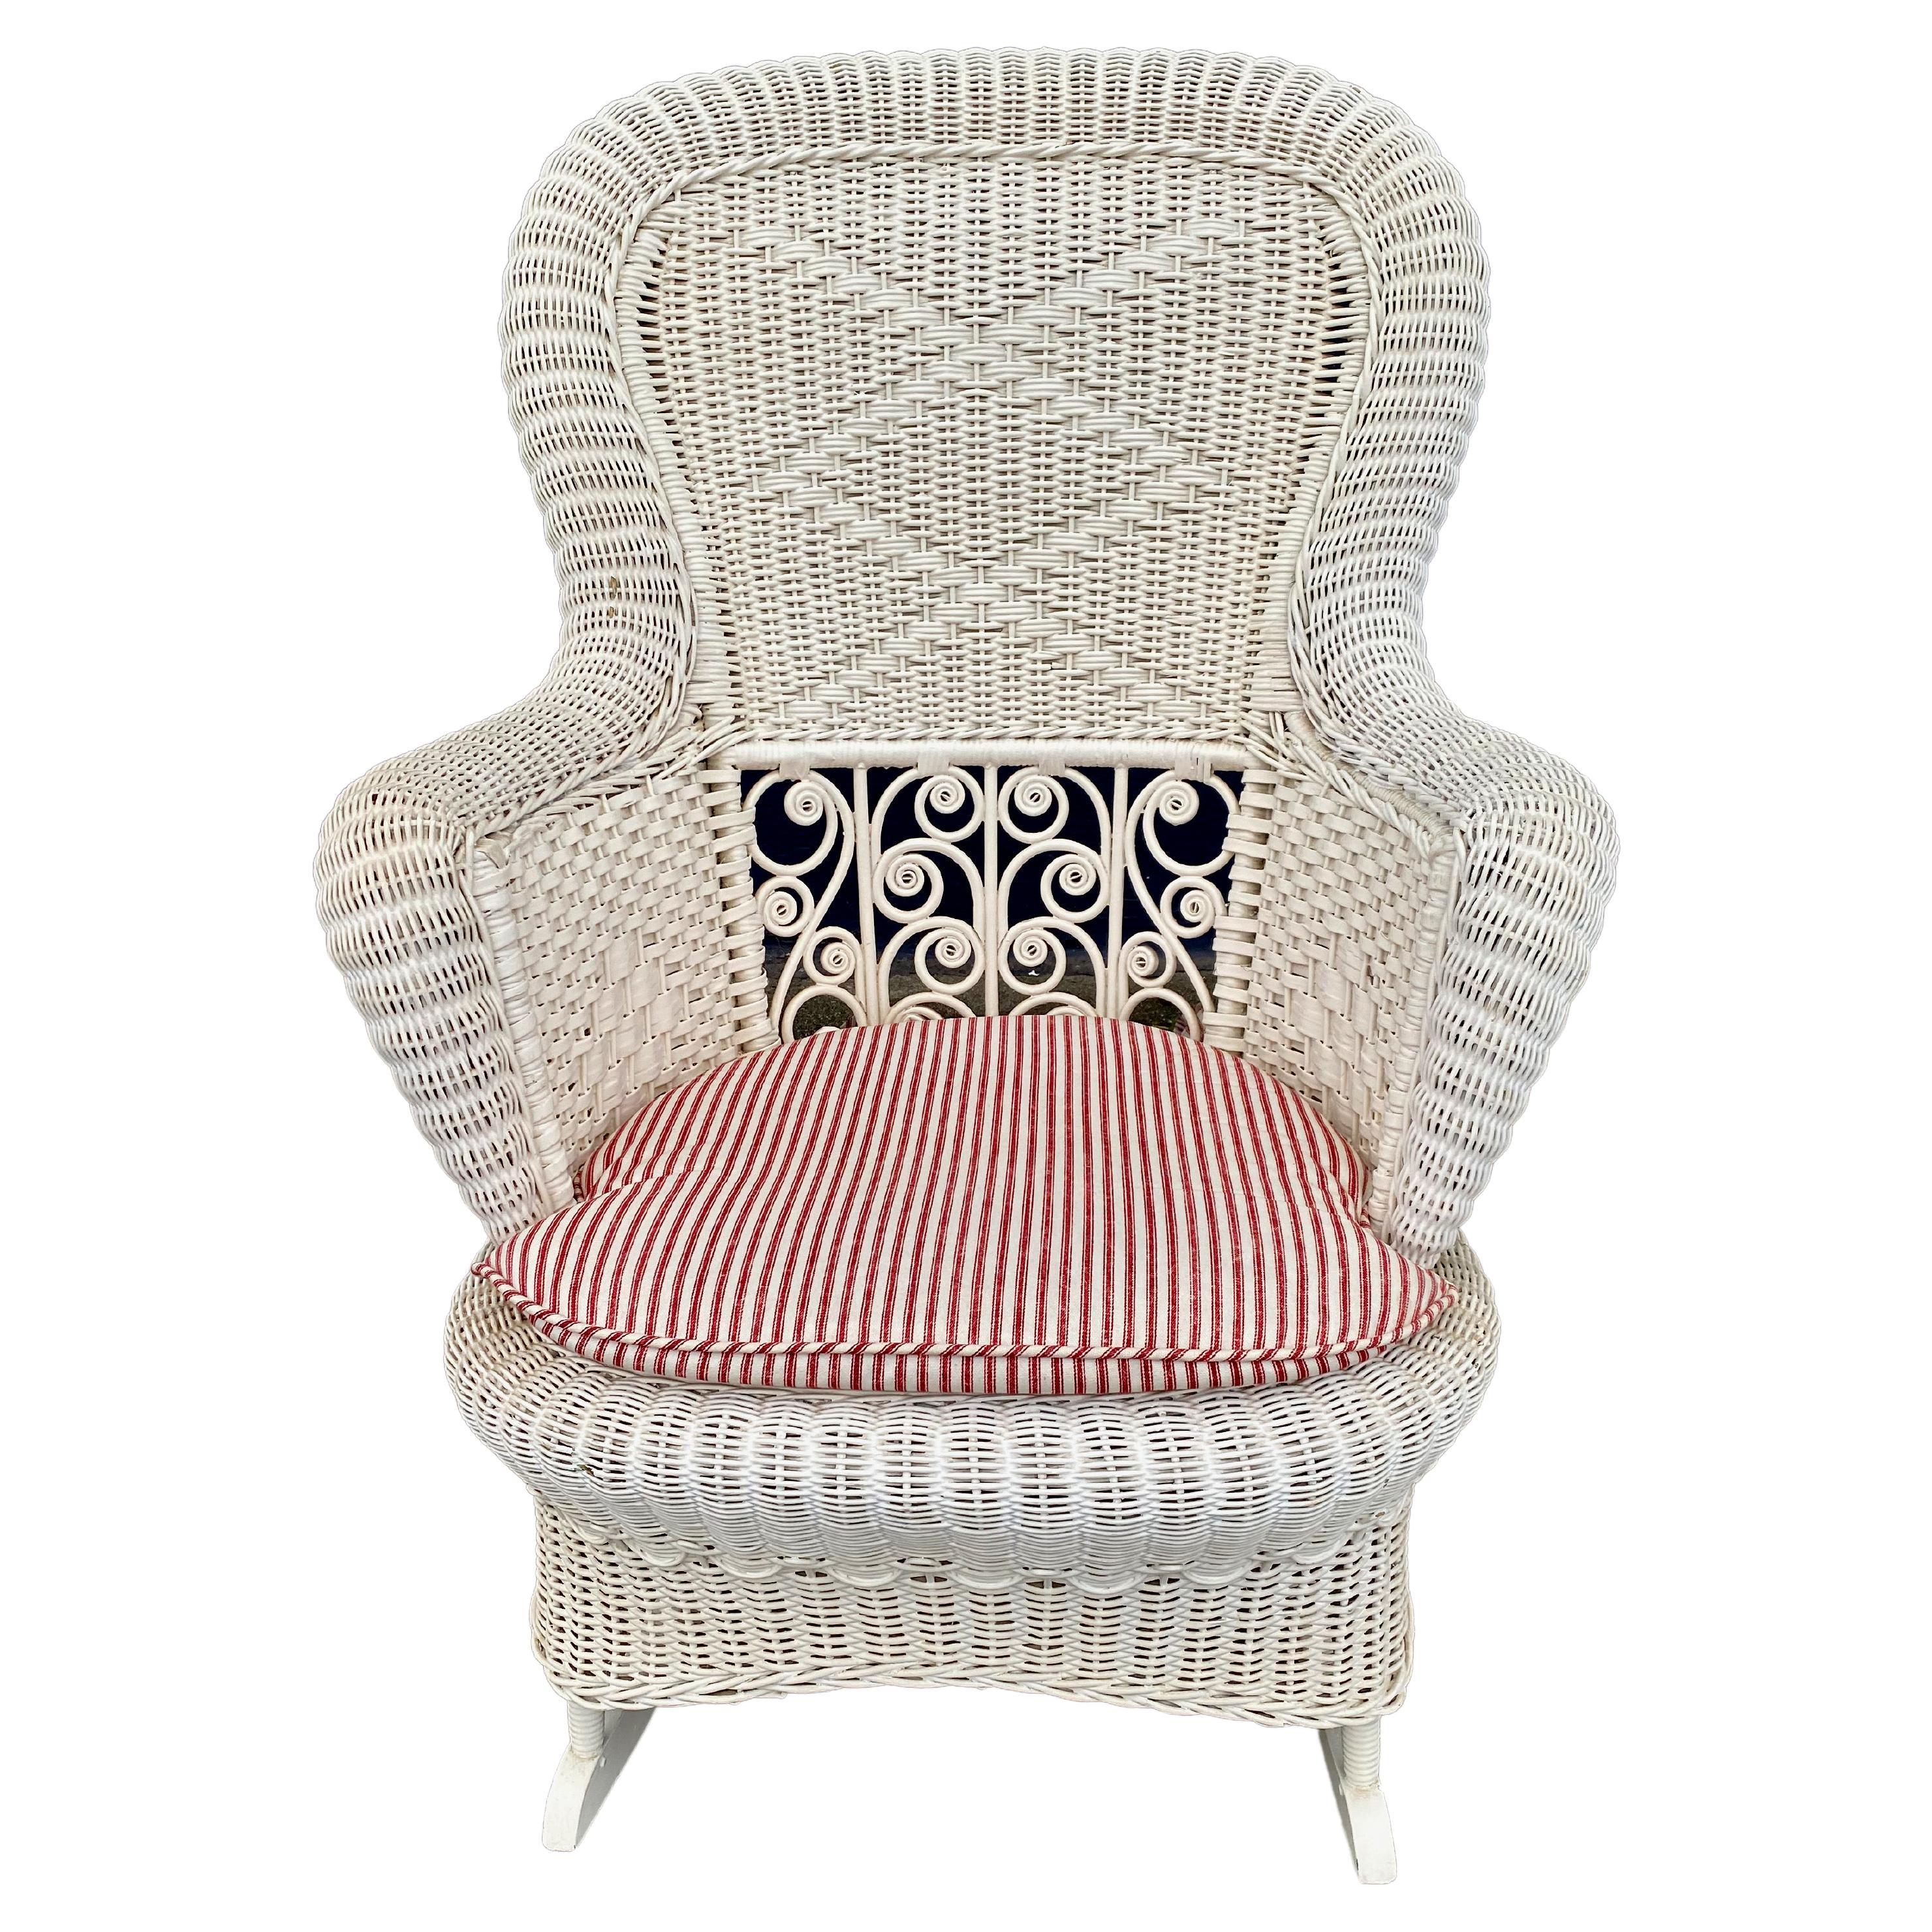 Il s'agit d'un très bon exemple de chaise à bascule en osier de la fin de l'époque victorienne, avec des détails en osier enroulé et un motif en losange, ainsi qu'une jupe en forme de poire. La chaise est dans l'ensemble en très bon état d'origine